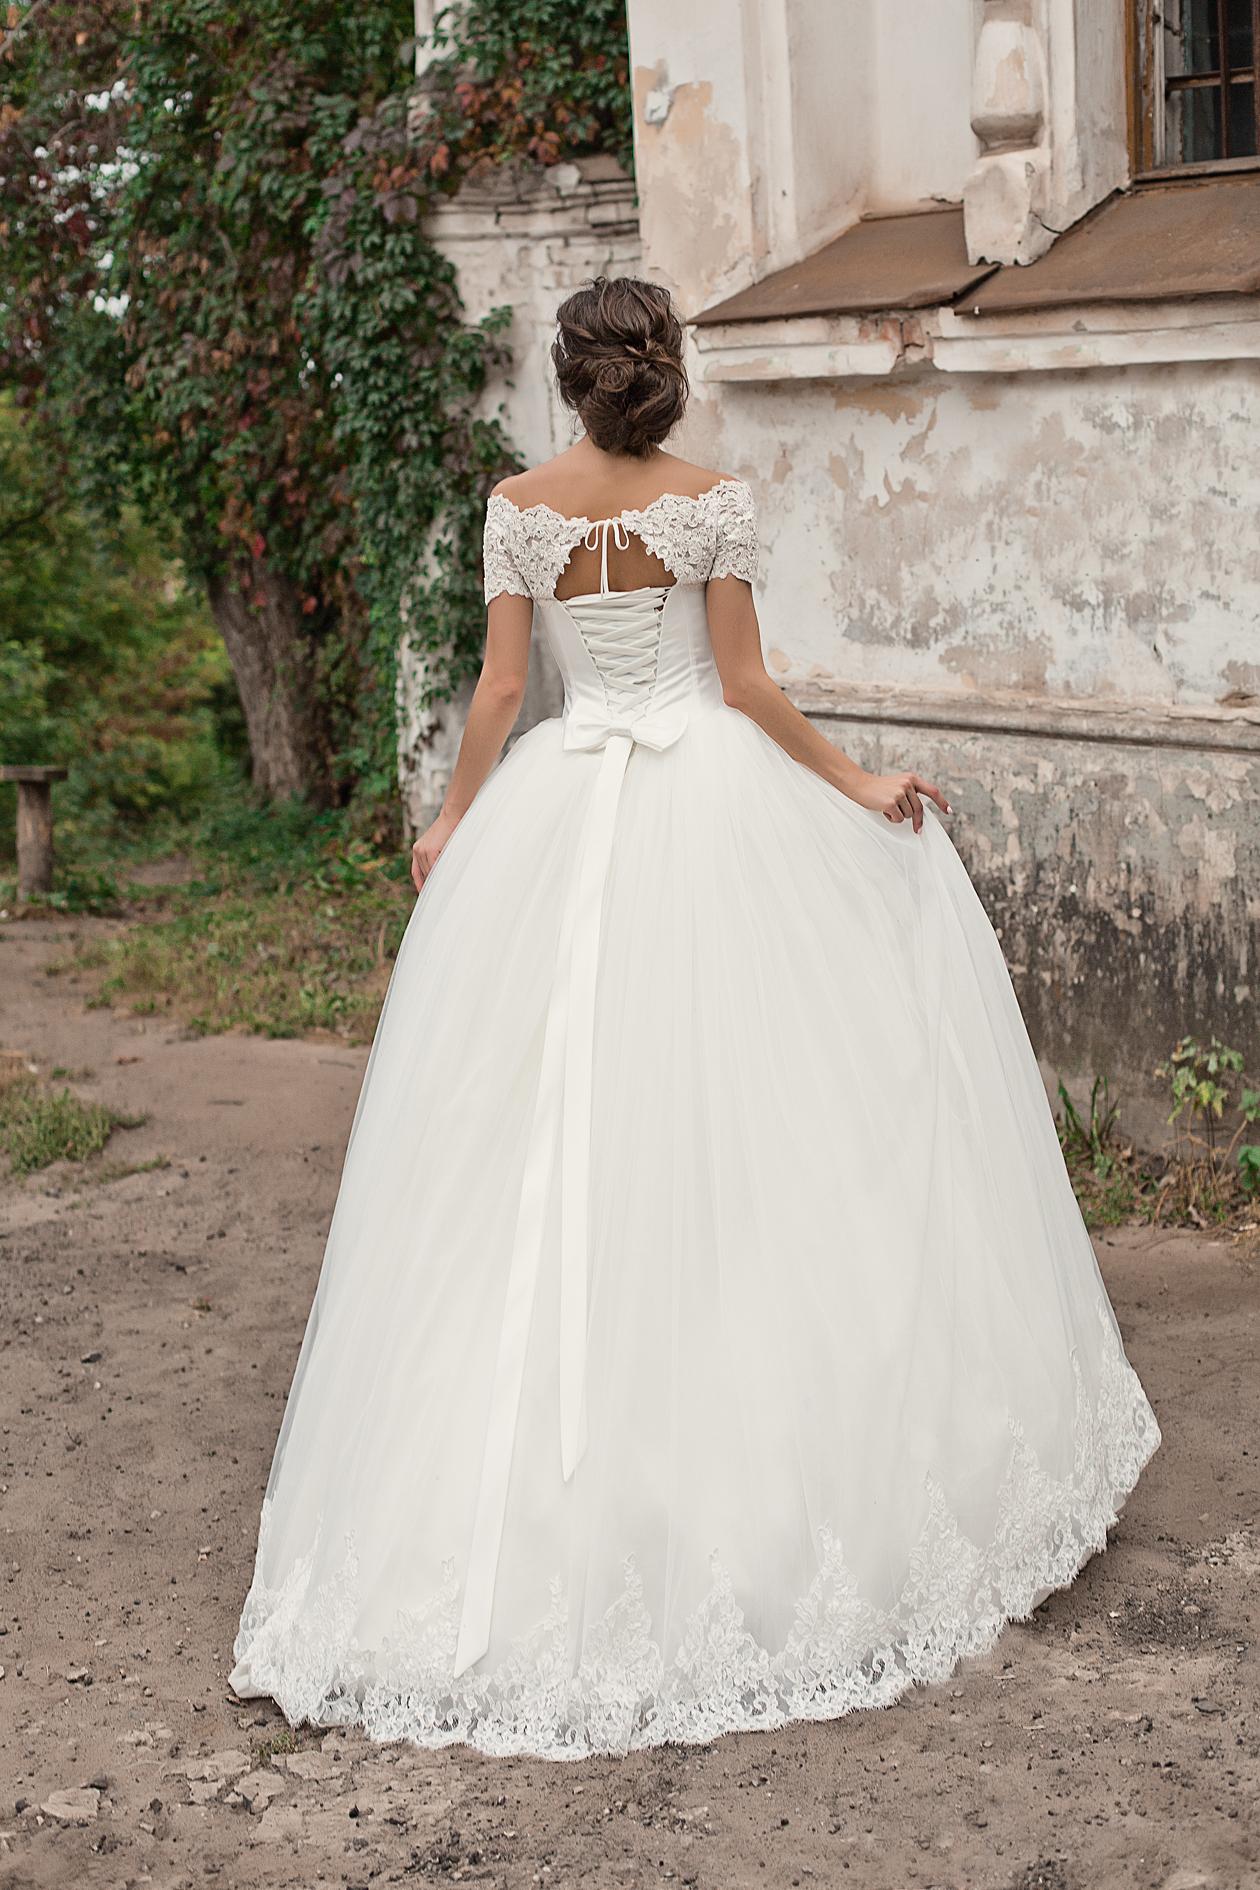 Свадебное платье с бантом на спине